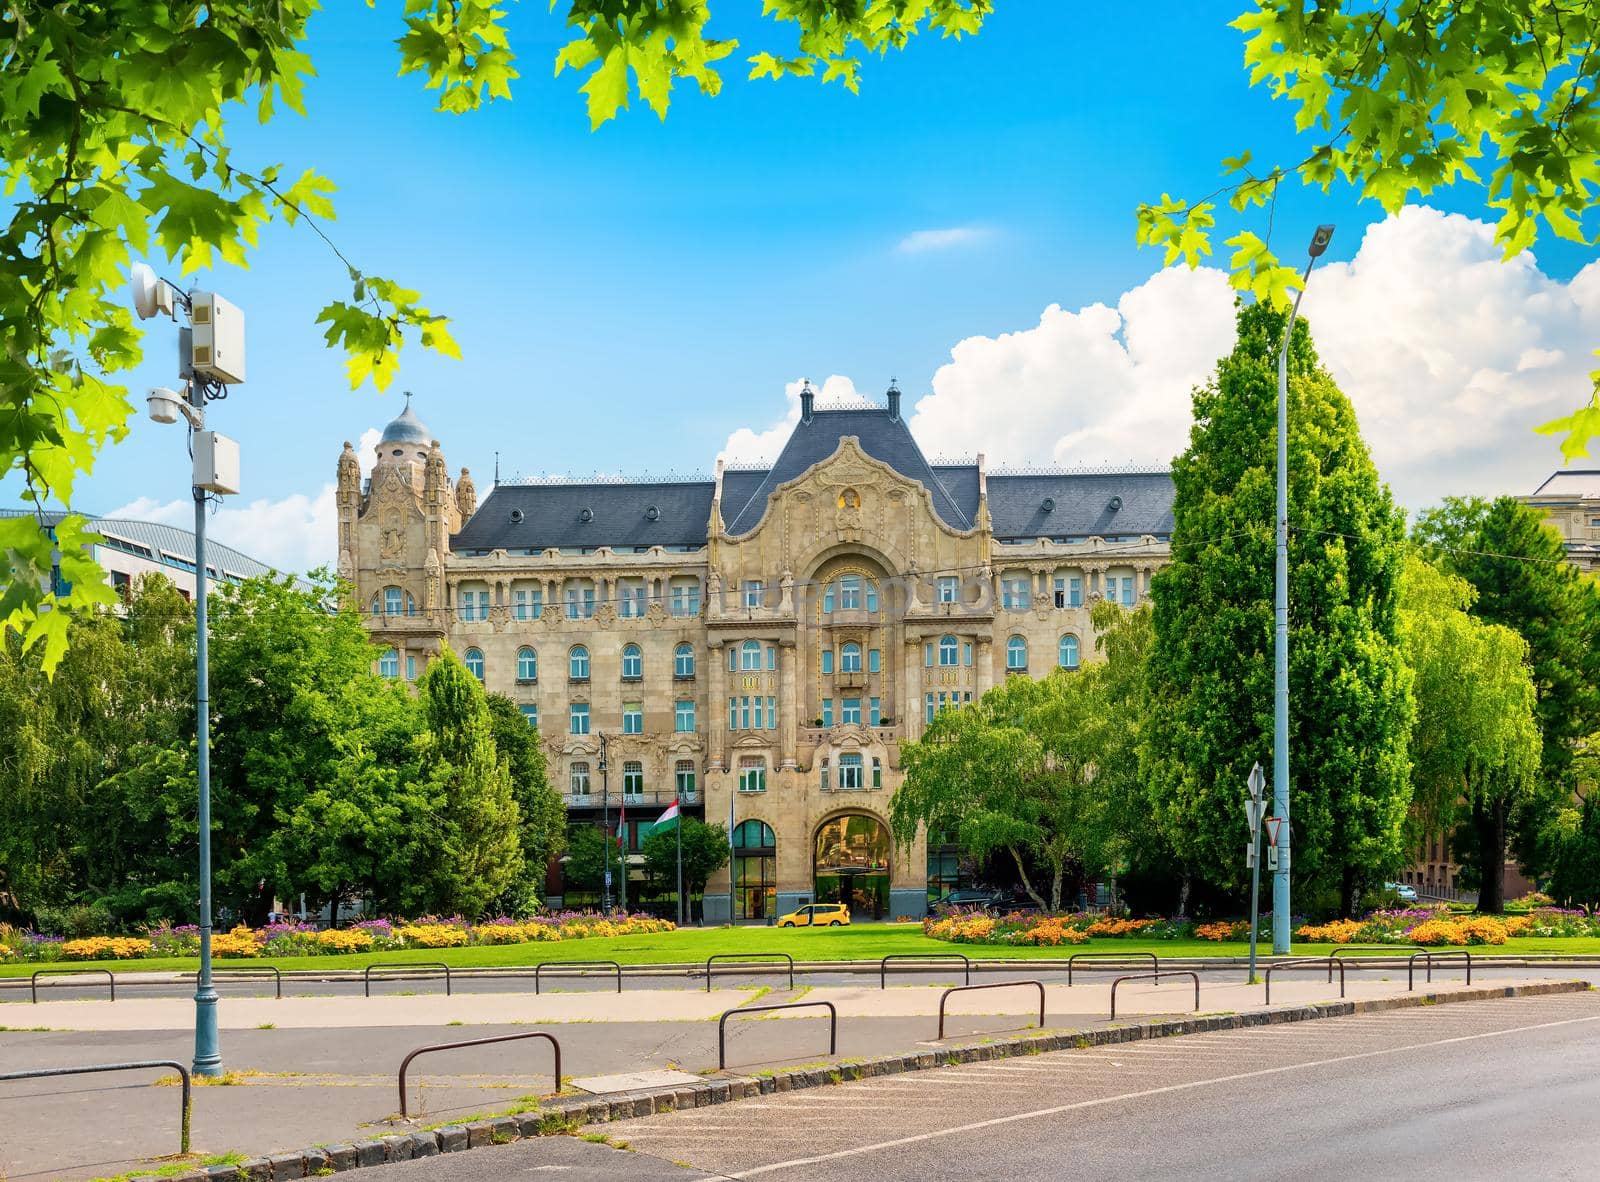 Beautiful Gresham Palace by day, Budapest, Hungary